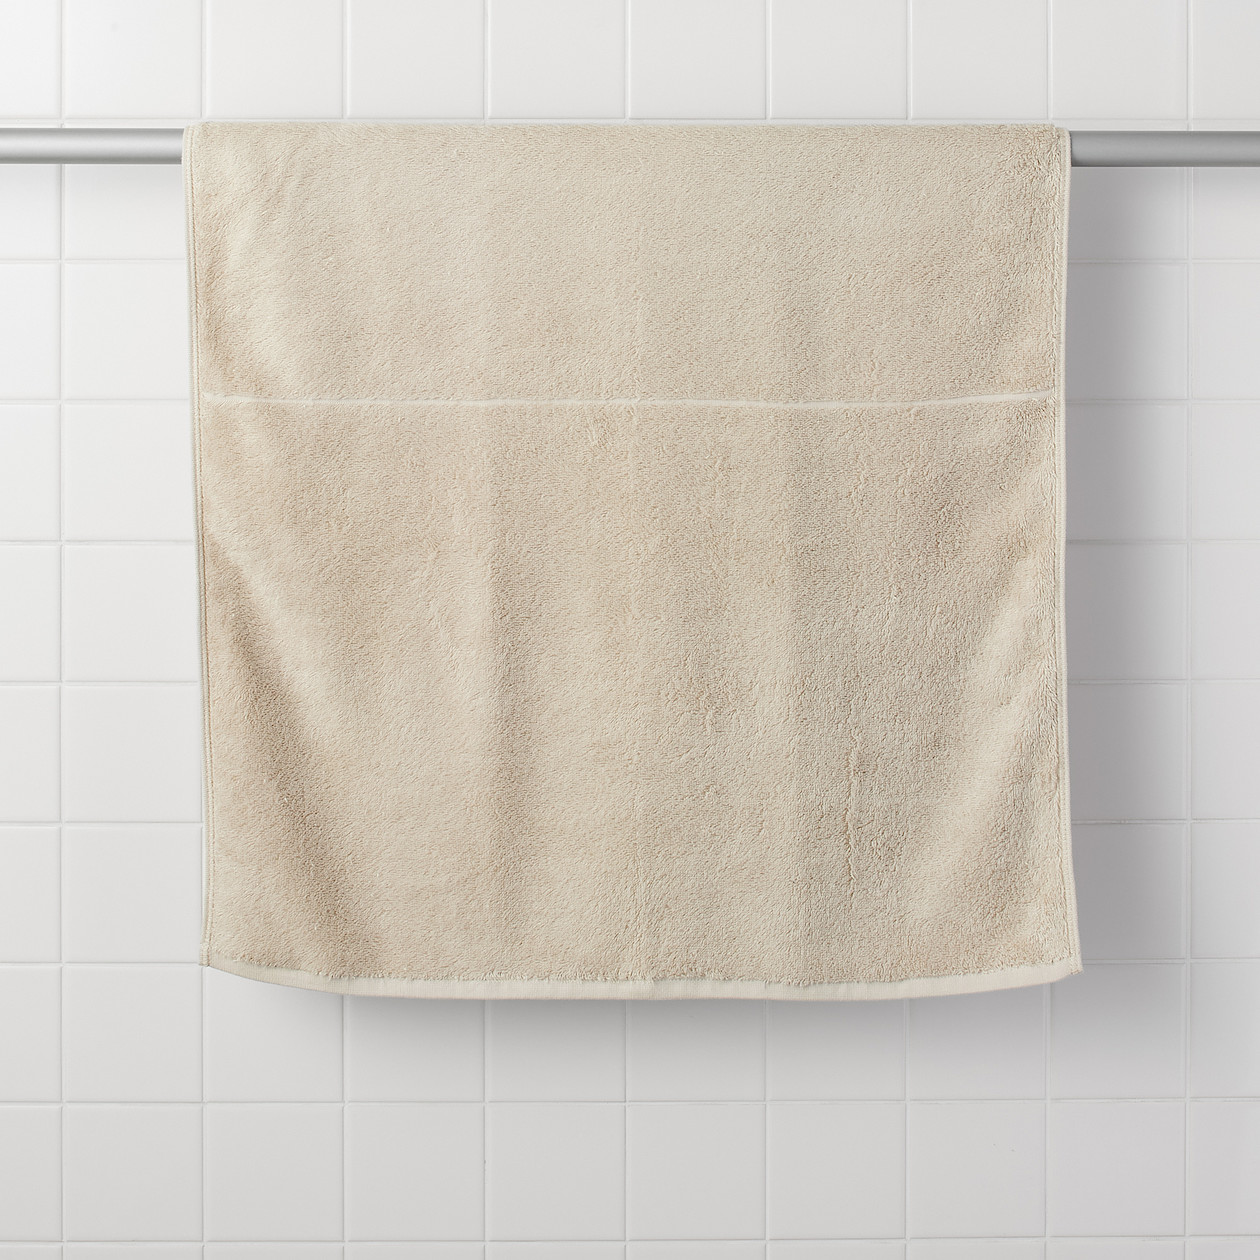 มูจิ ผ้าขนหนูผ้าฝ้ายออร์แกนิก - MUJI Cotton Pile Towel สี สีเทาอ่อน สี สีเทาอ่อนsize Bath Towel 70x140 CM